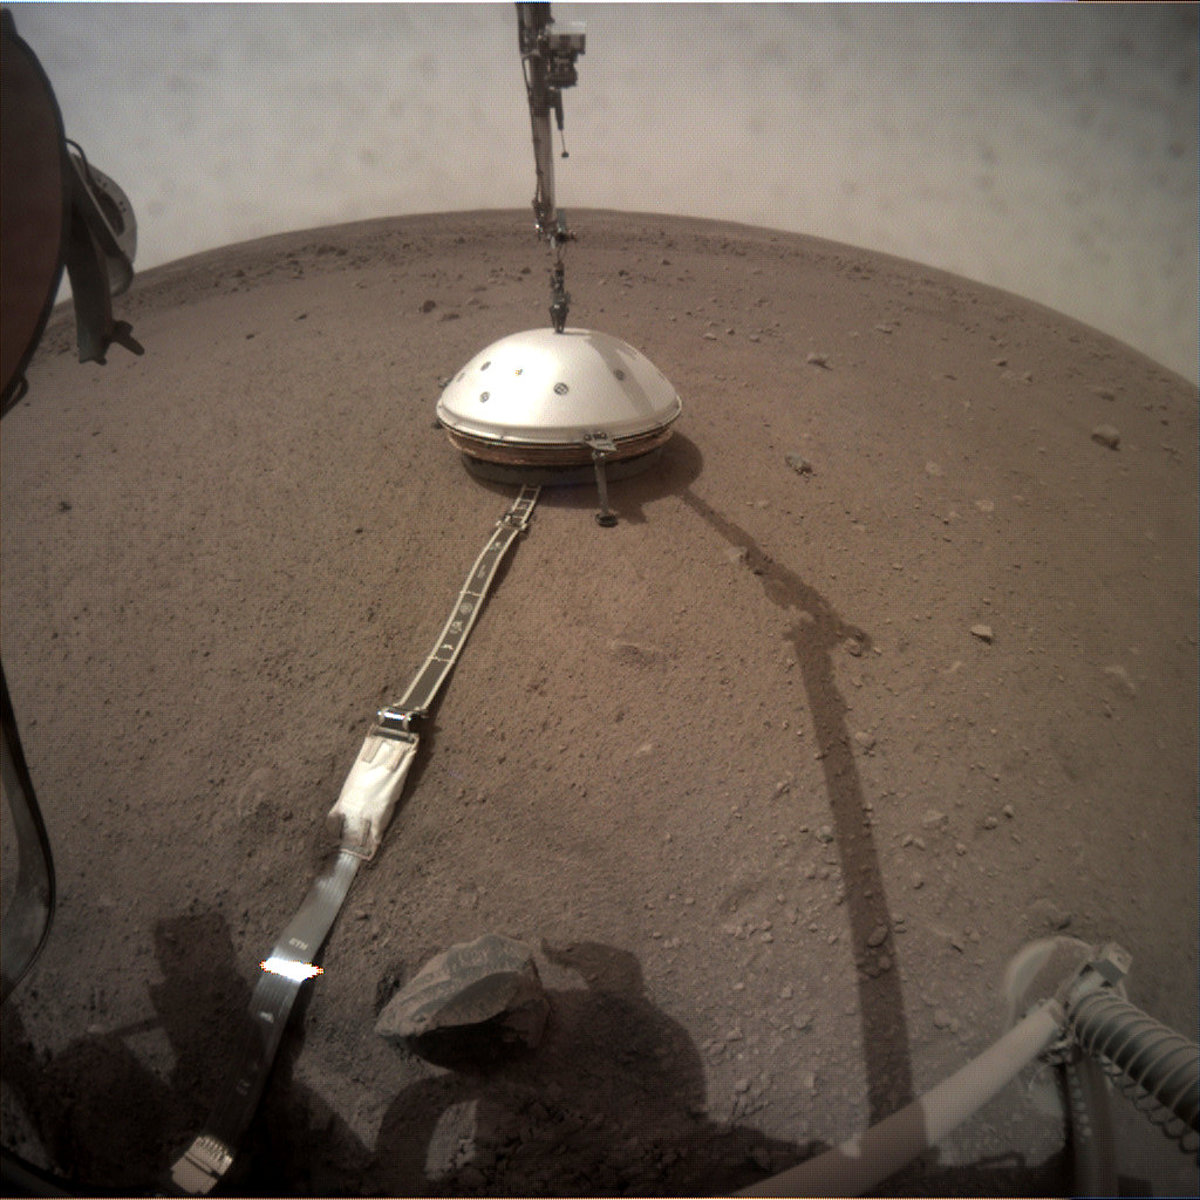  mars.nasa.gov insight raw images surface sol 0066 Image Credit: NASA/JPL-Caltech